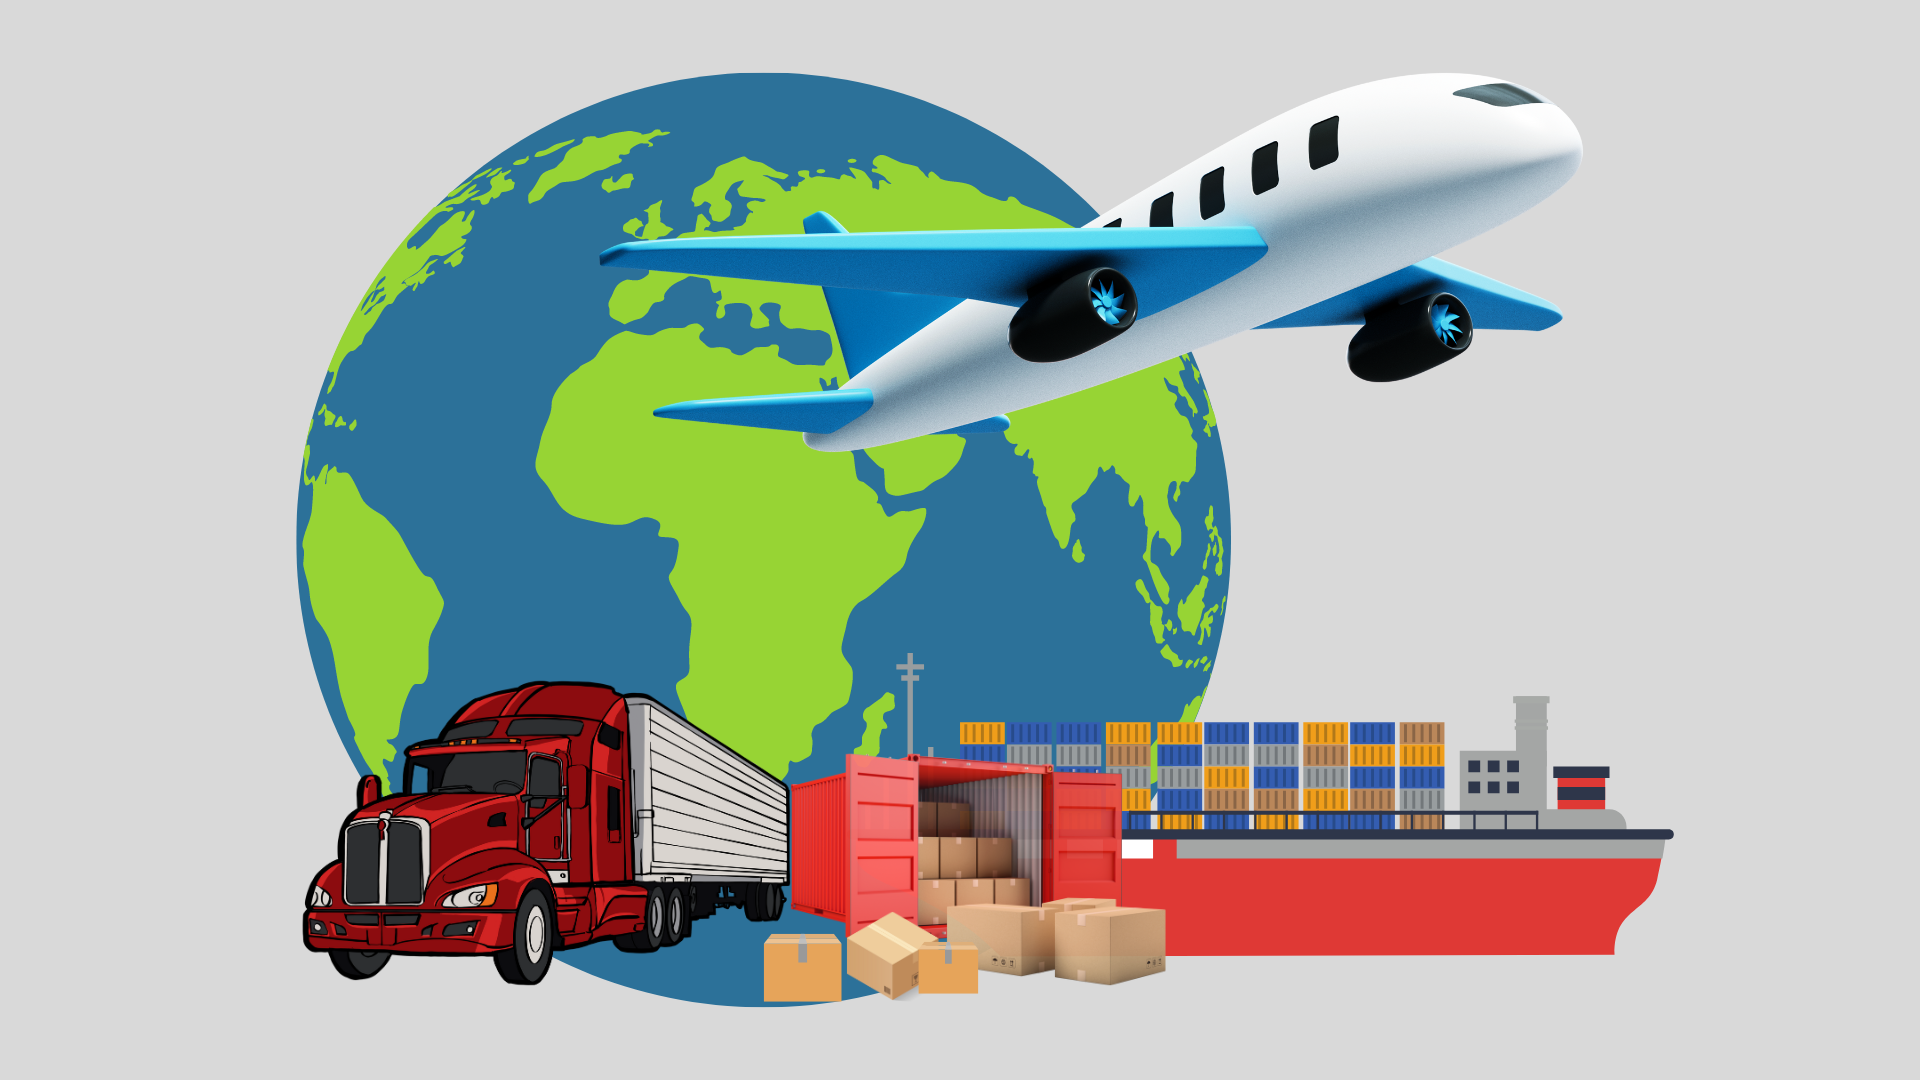 Các phương thức vận chuyển hàng hóa quốc tế